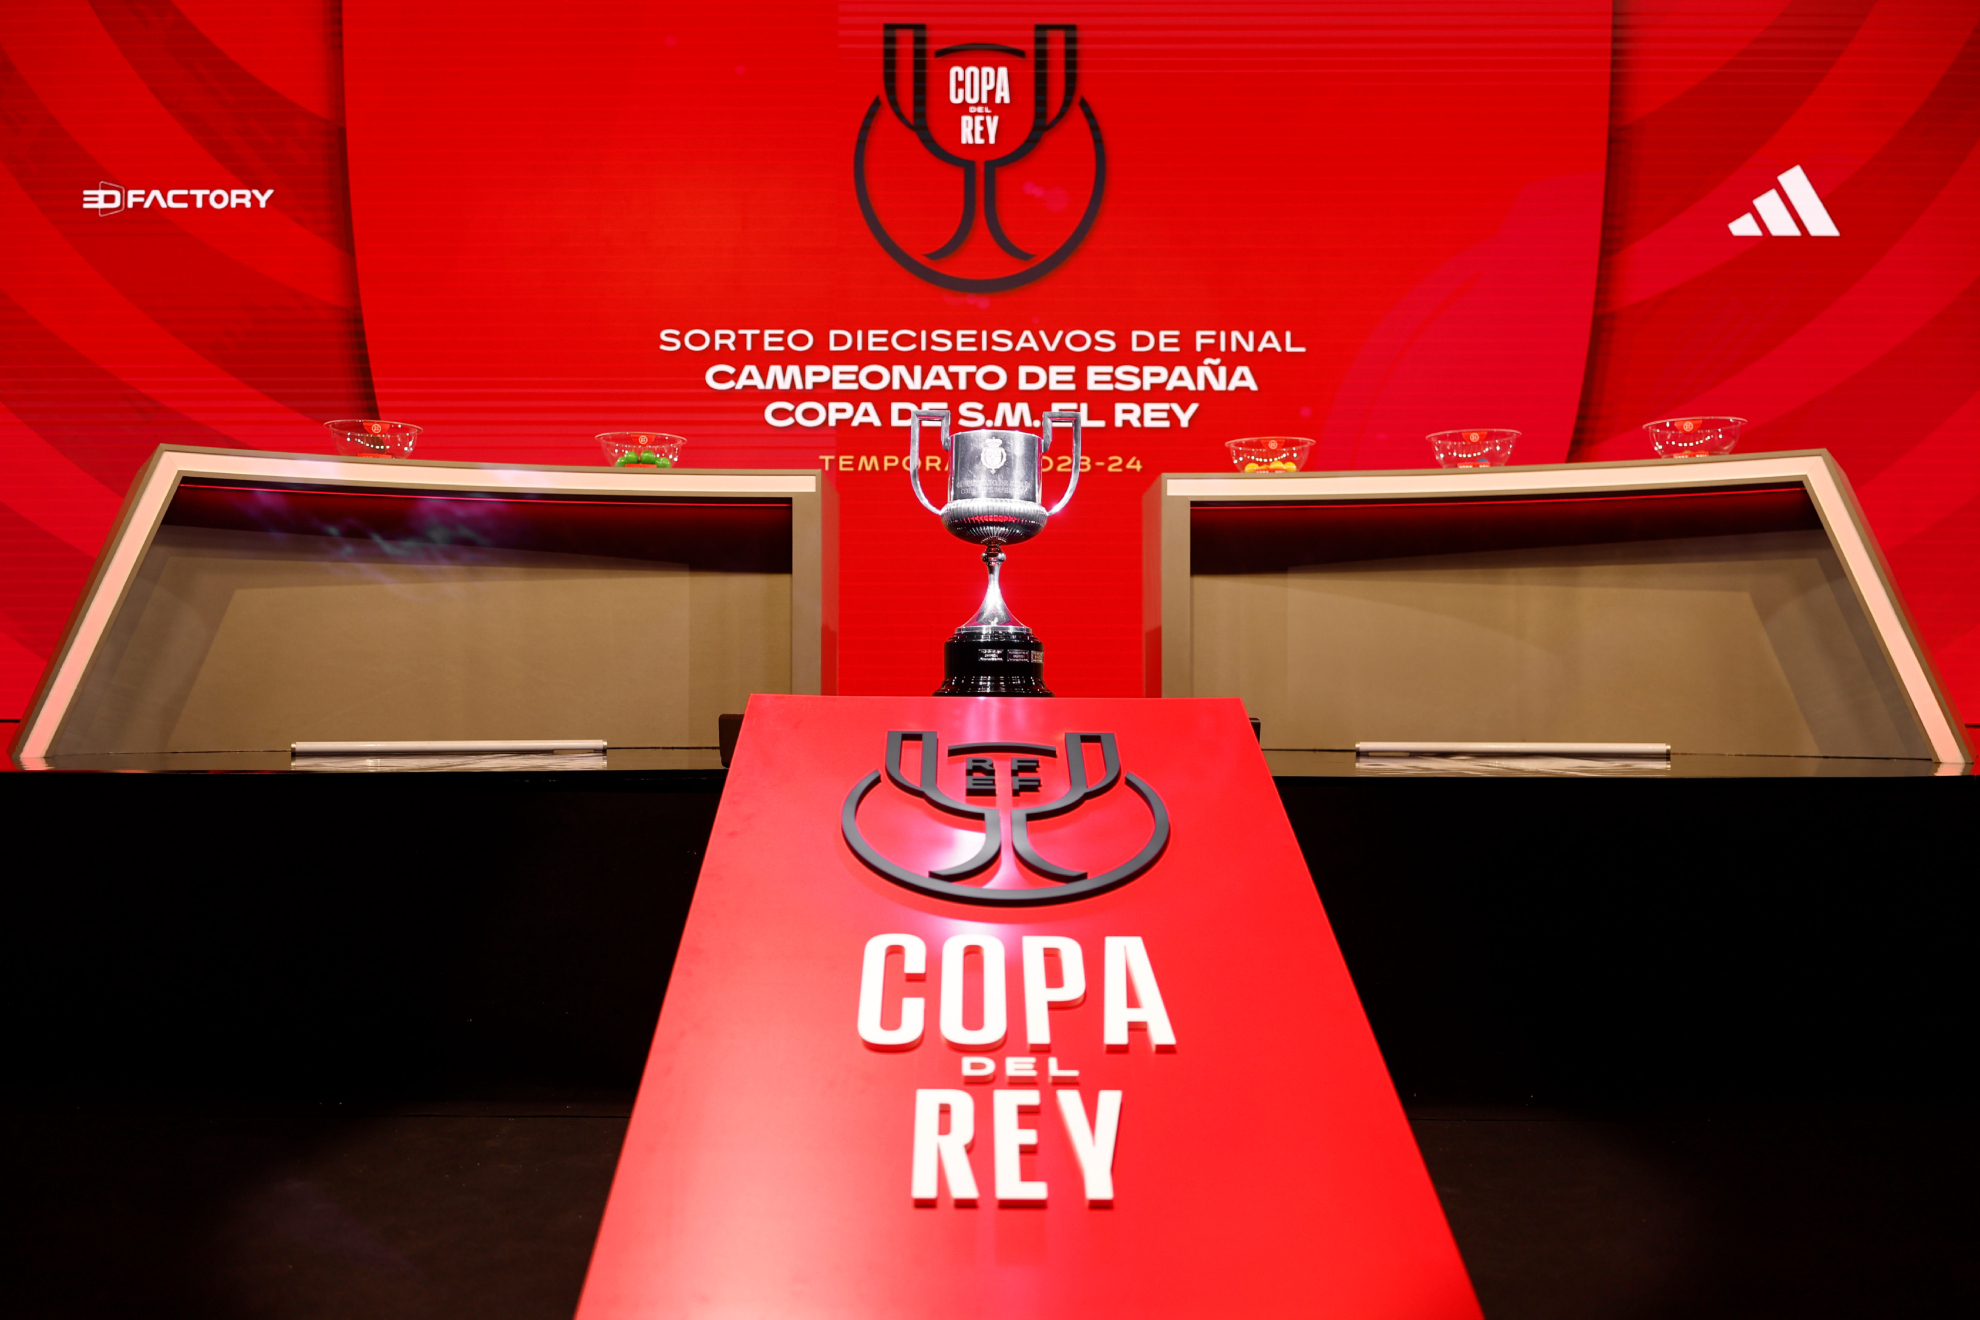 La Copa del Rey, expuesta en el marco del sorteo de los dieciseisavos